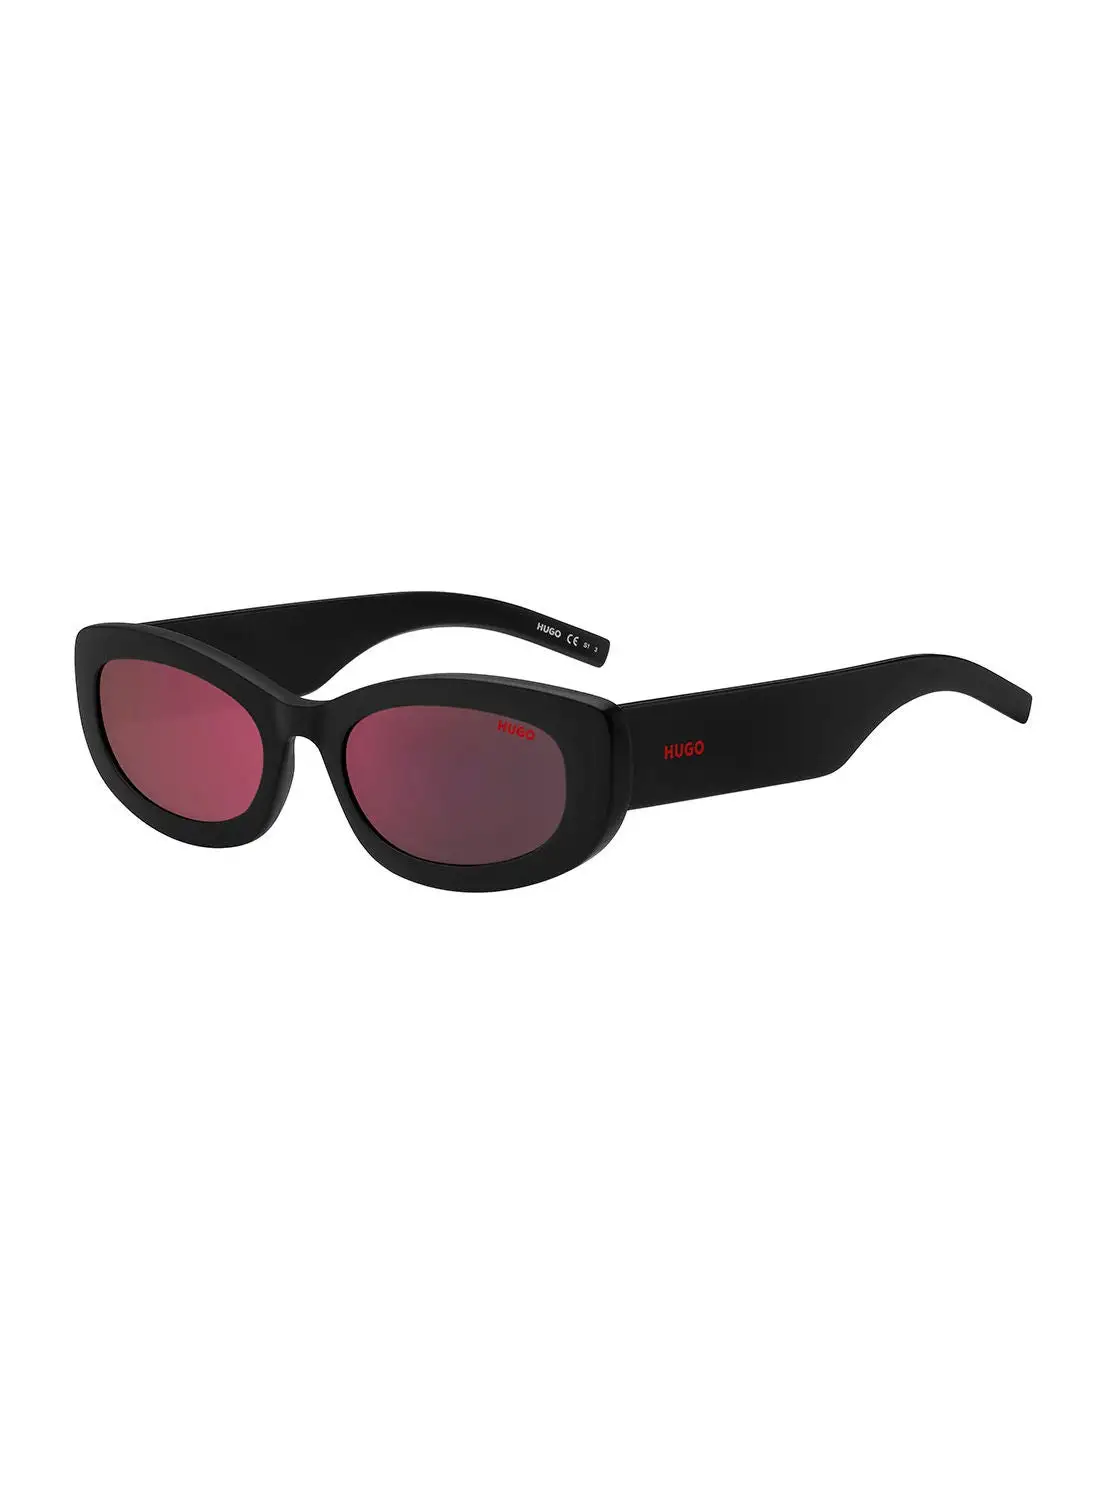 HUGO Women's UV Protection Rectangular Sunglasses - Hg 1253/S Black 54 - Lens Size: 54 Mm